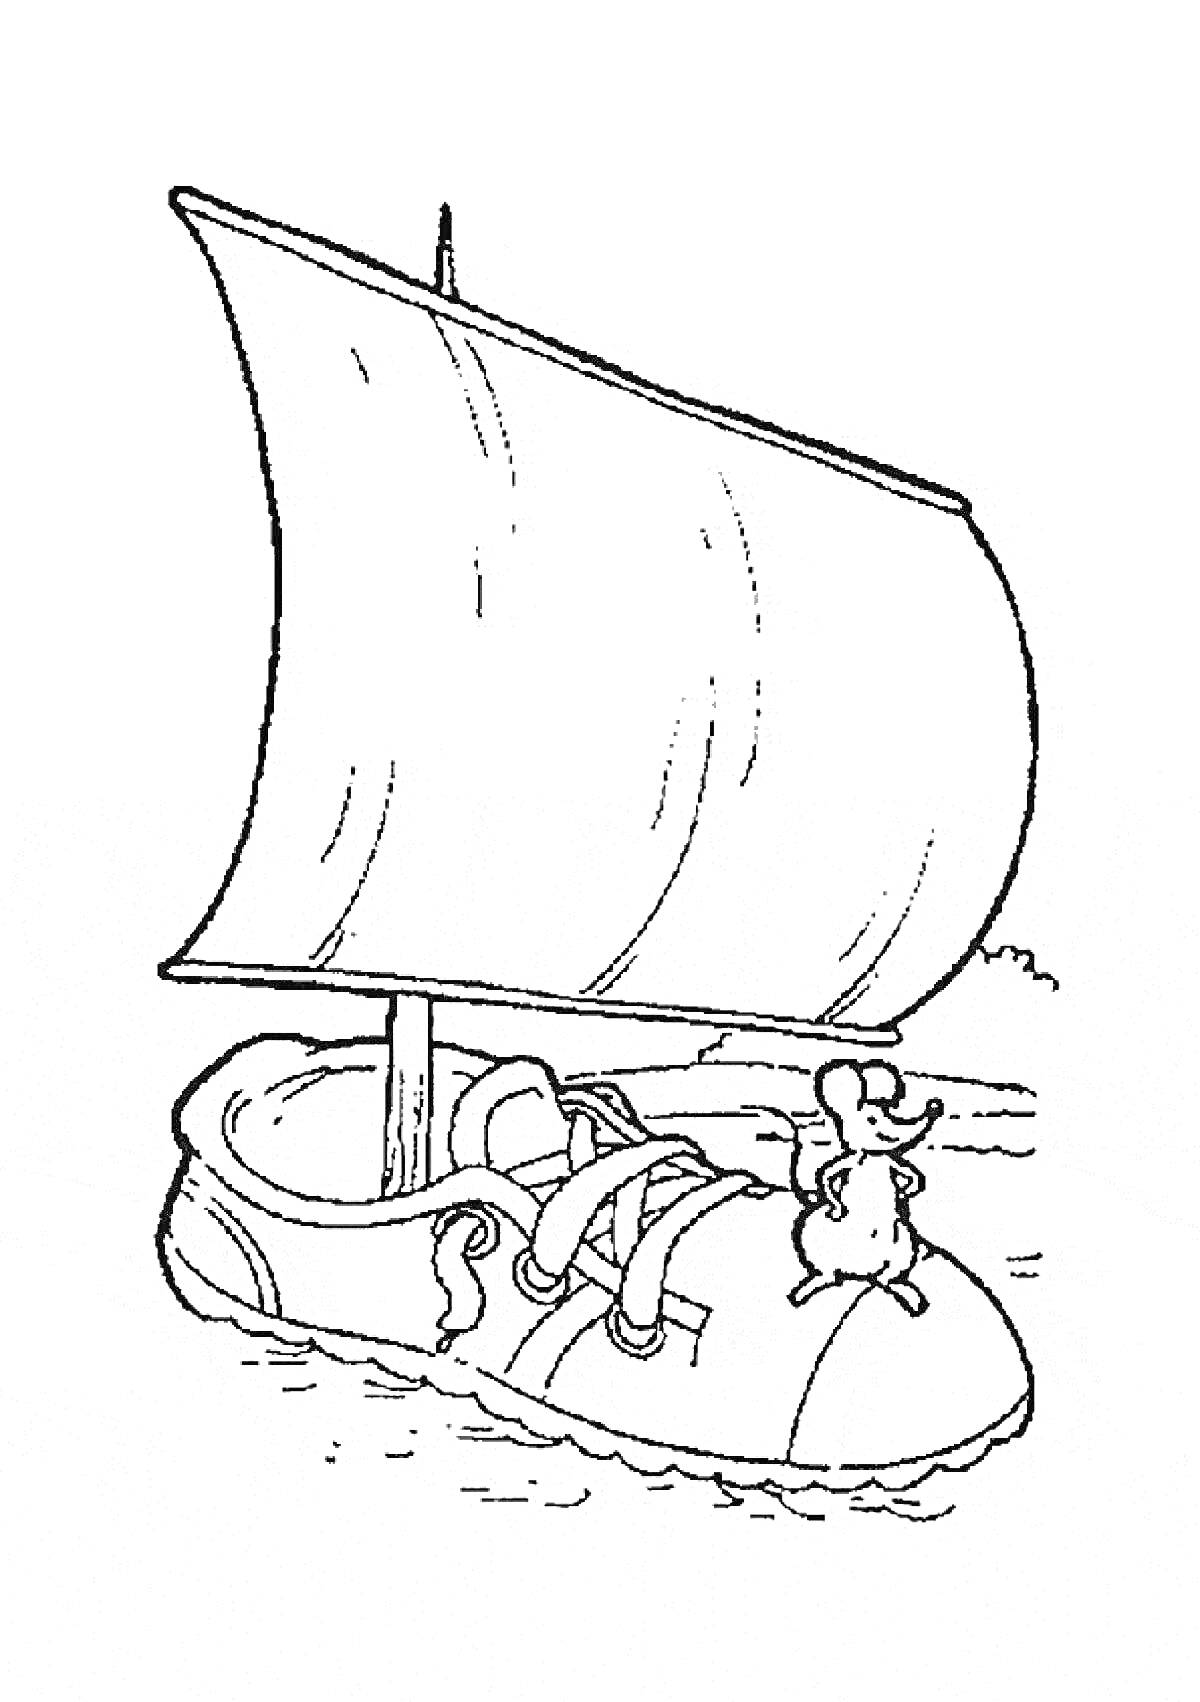 Мышонок Пик плывёт на лодке из ботинка с парусом